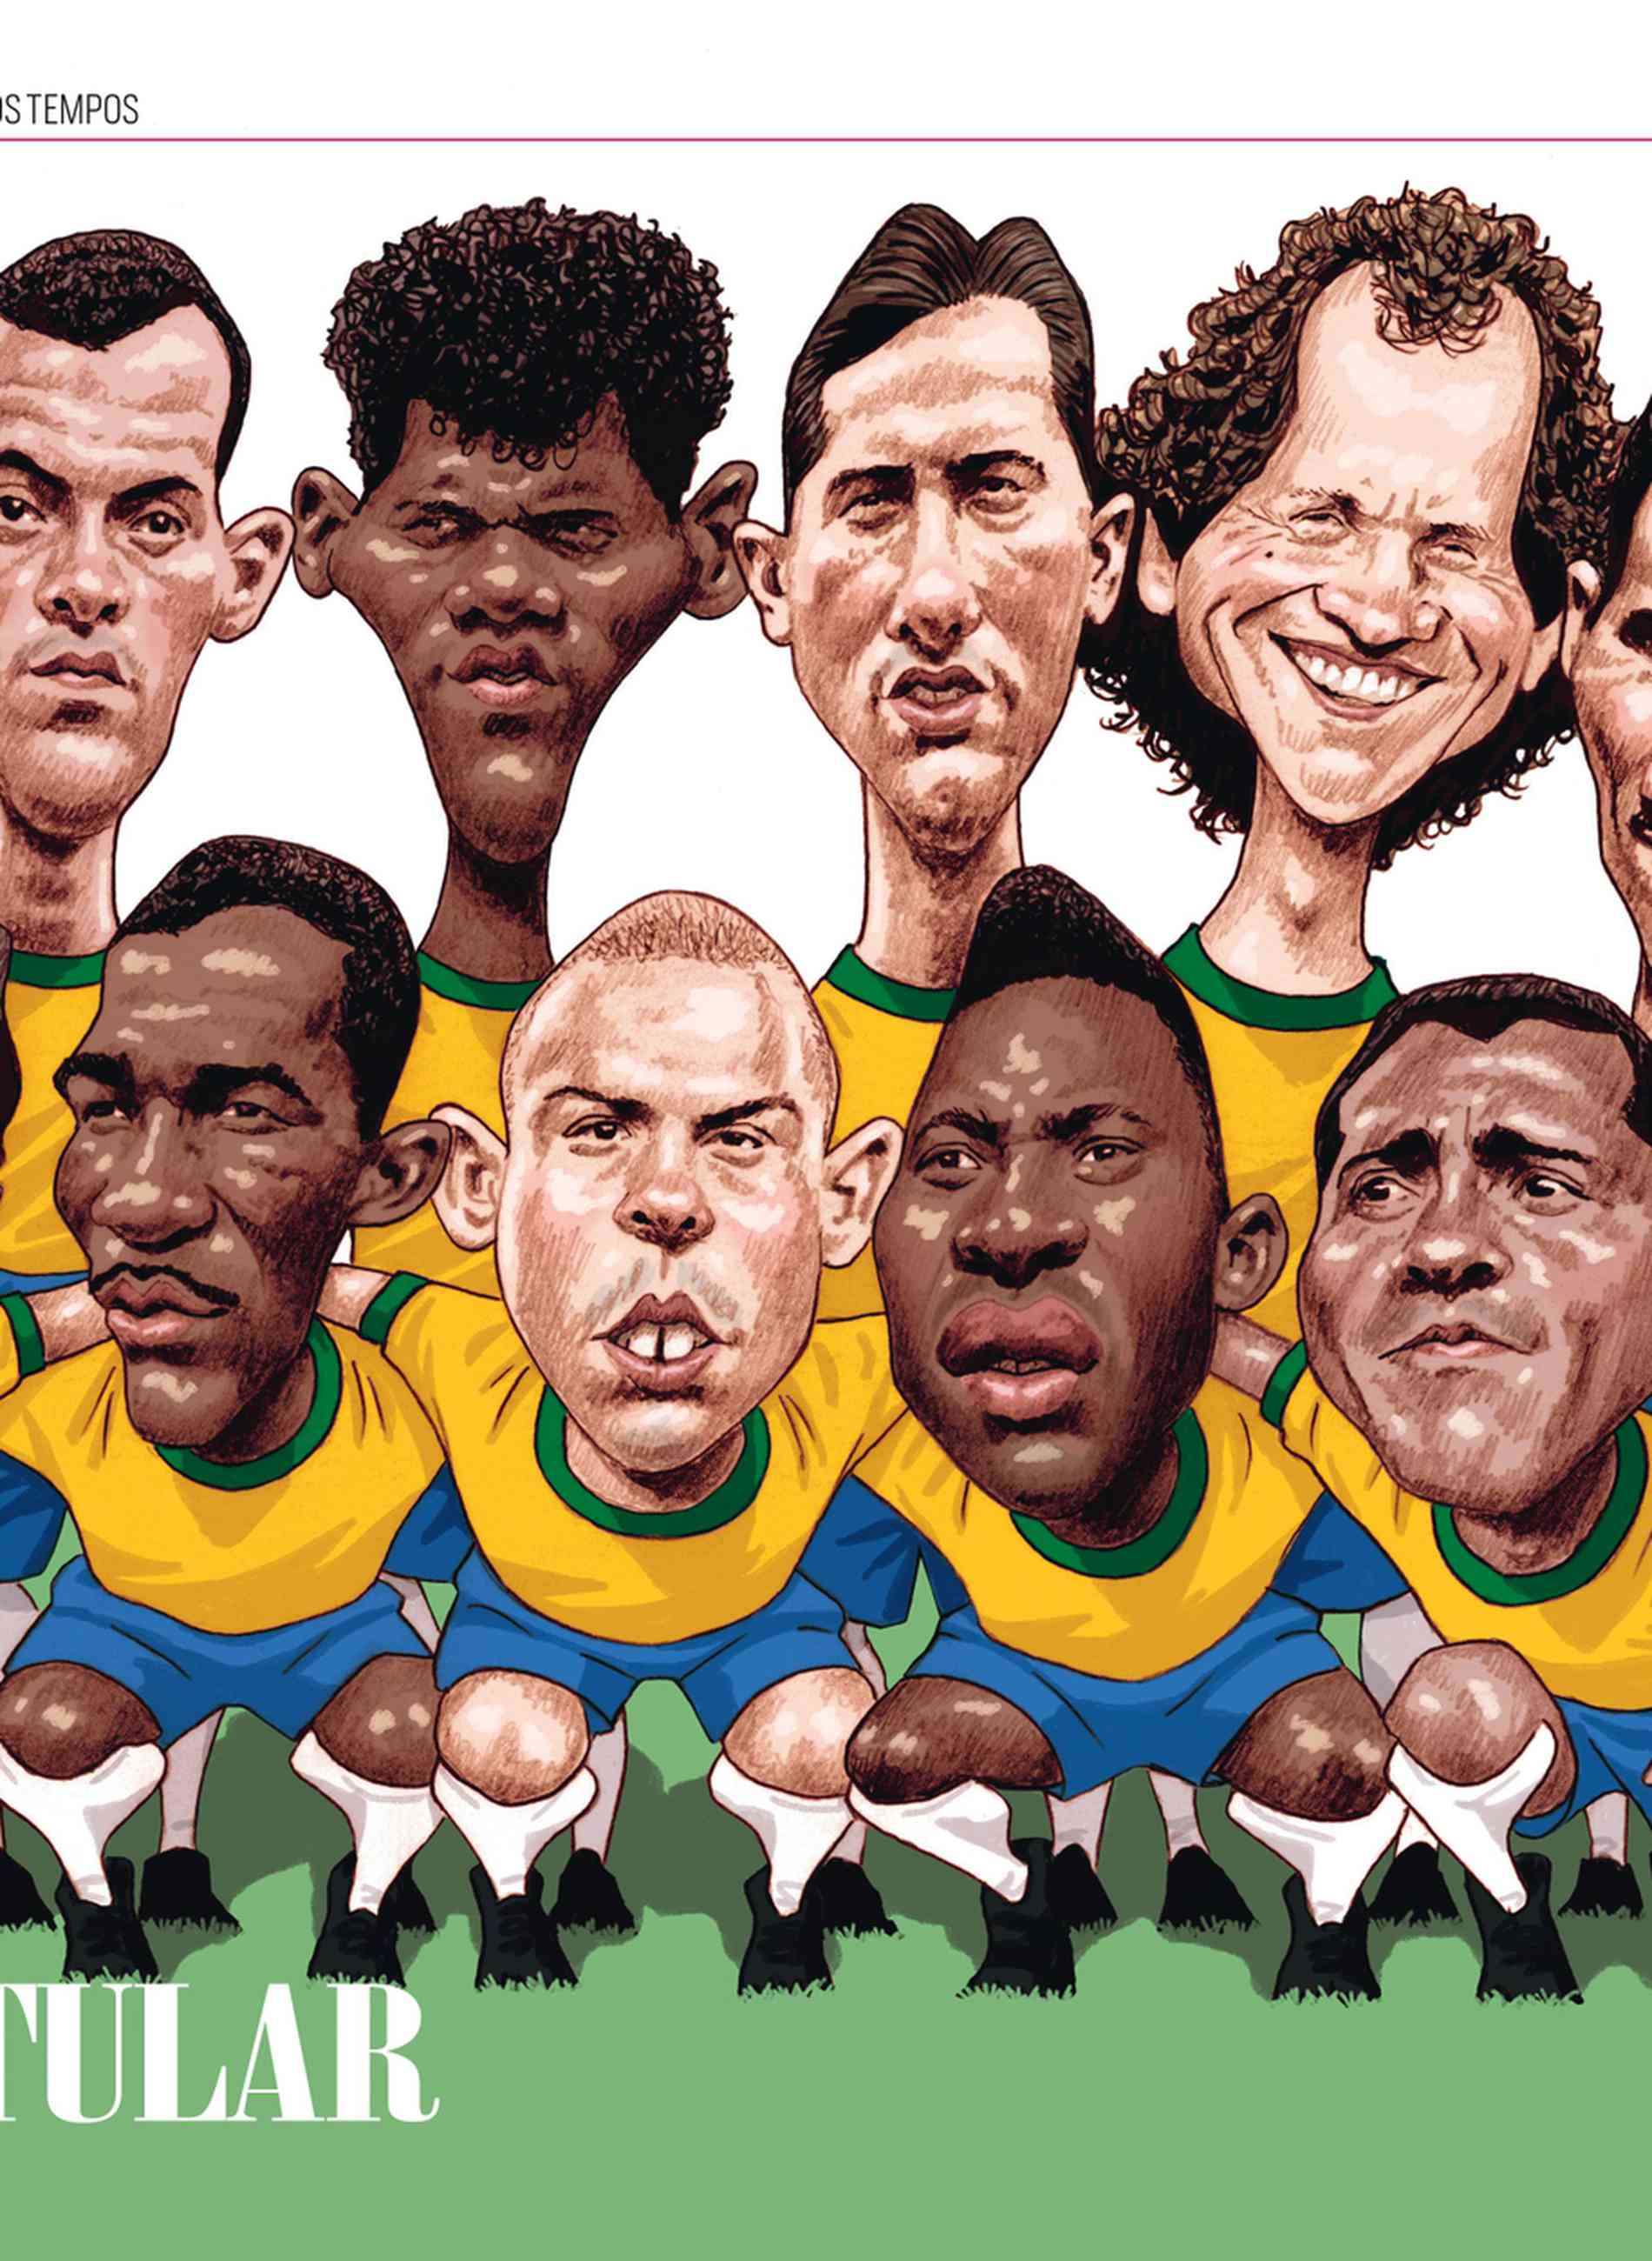 Seleção brasileira de todos os tempos: mais partidas em Copas do